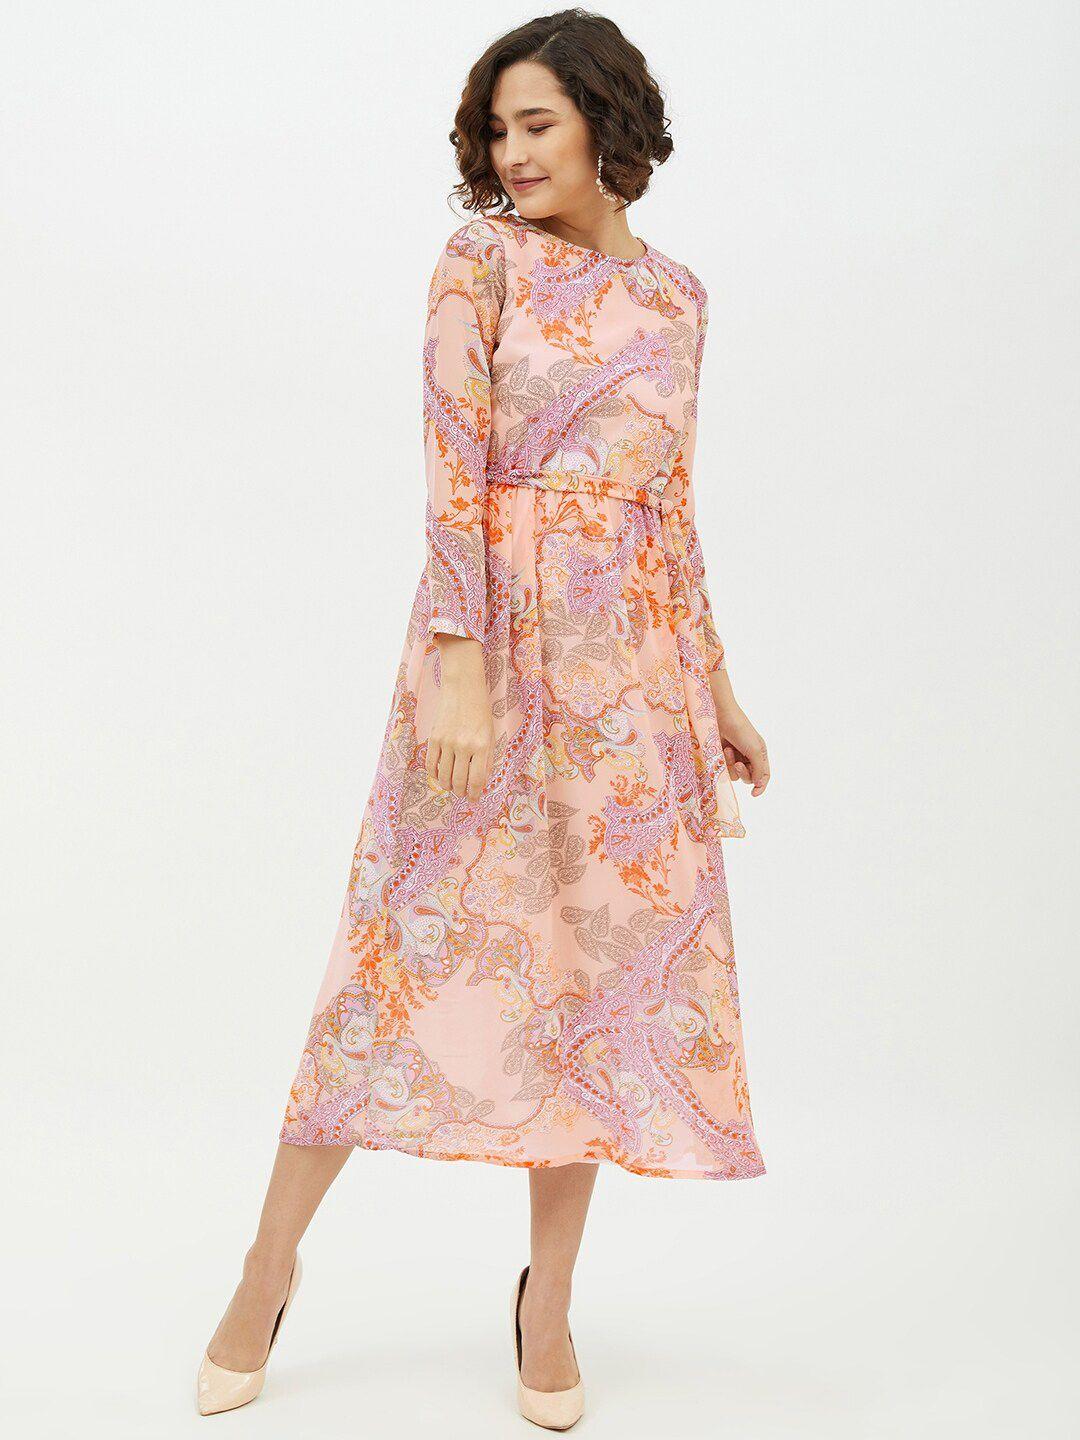 stylestone multicoloured floral georgette a-line midi dress